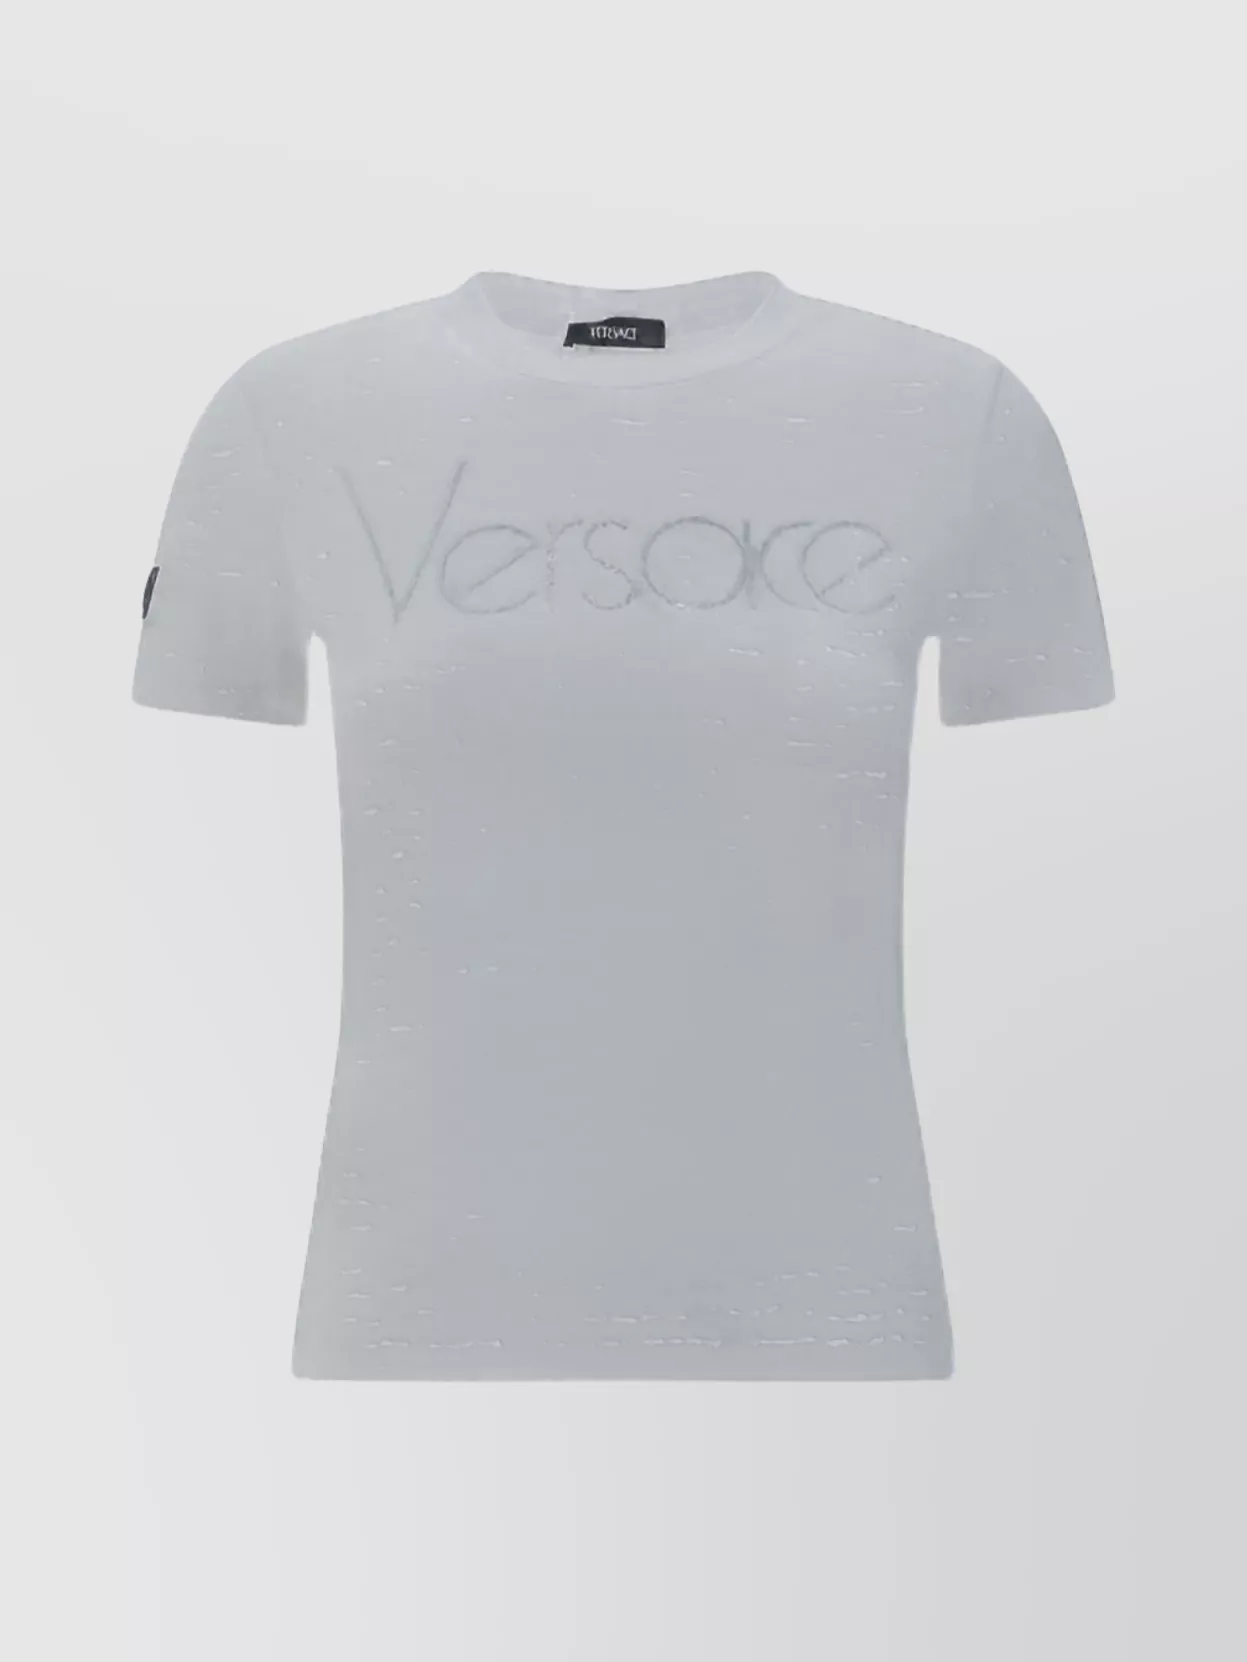 Versace Cotton Crew Neck Slim Fit T-shirt